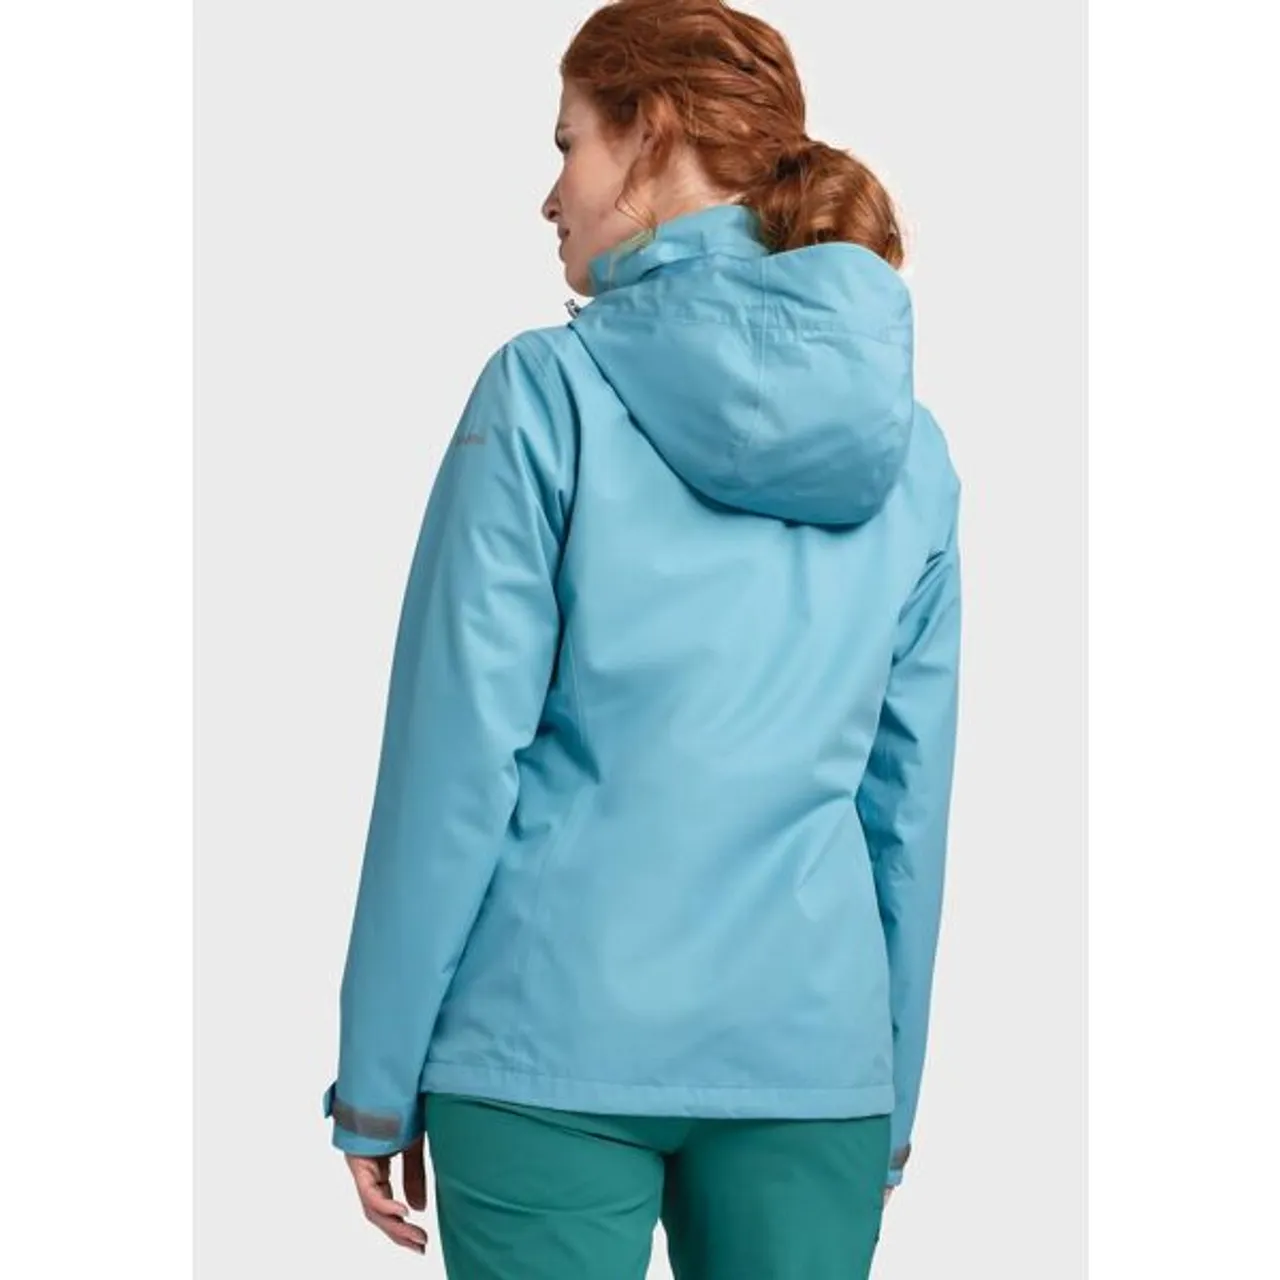 Outdoorjacke SCHÖFFEL "Jacket Gmund L" Gr. 42, blau (8225, blau) Damen Jacken Sportjacken